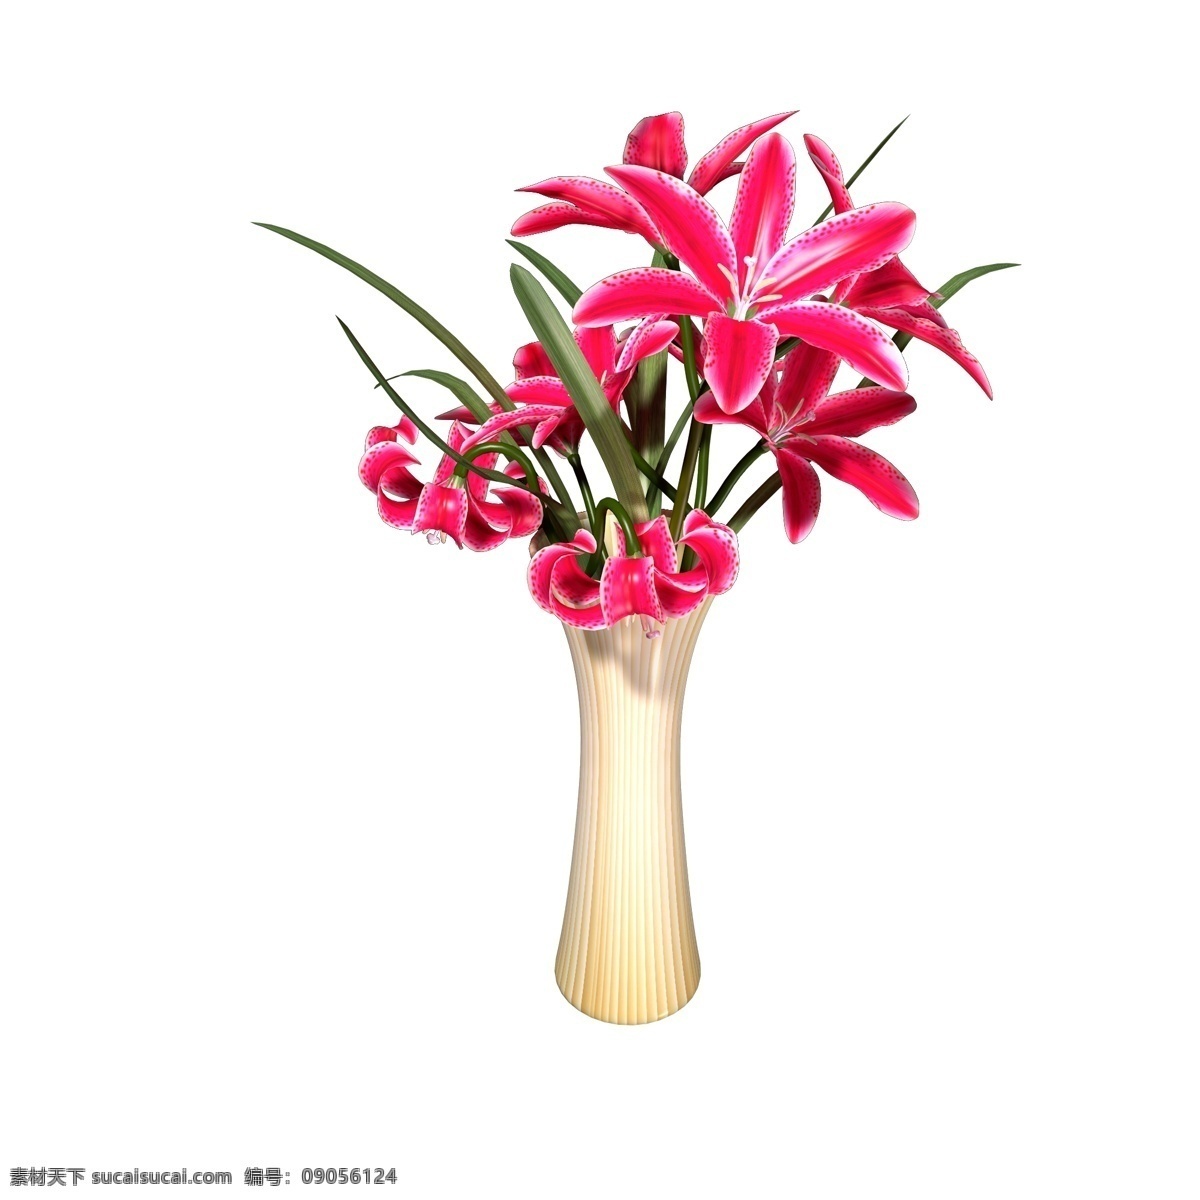 植物类 通用 元素 花瓶 插花 红色 百合花 植物 黄色 条纹 装饰 写实 立体